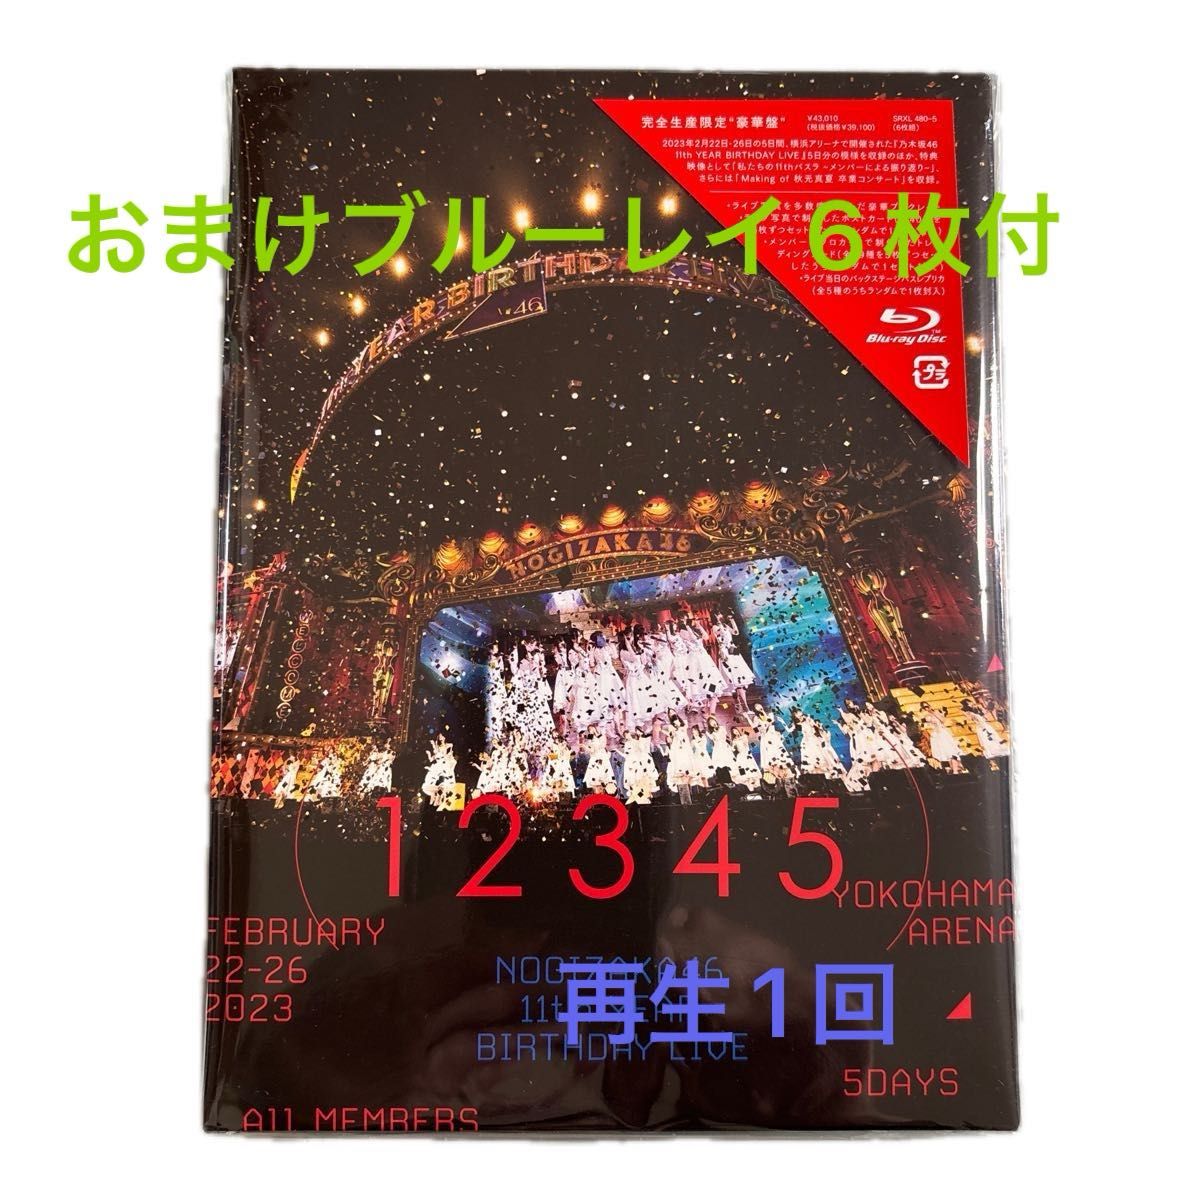 乃木坂46 11th YEAR BIRTHDAY LIVE Blu-ray